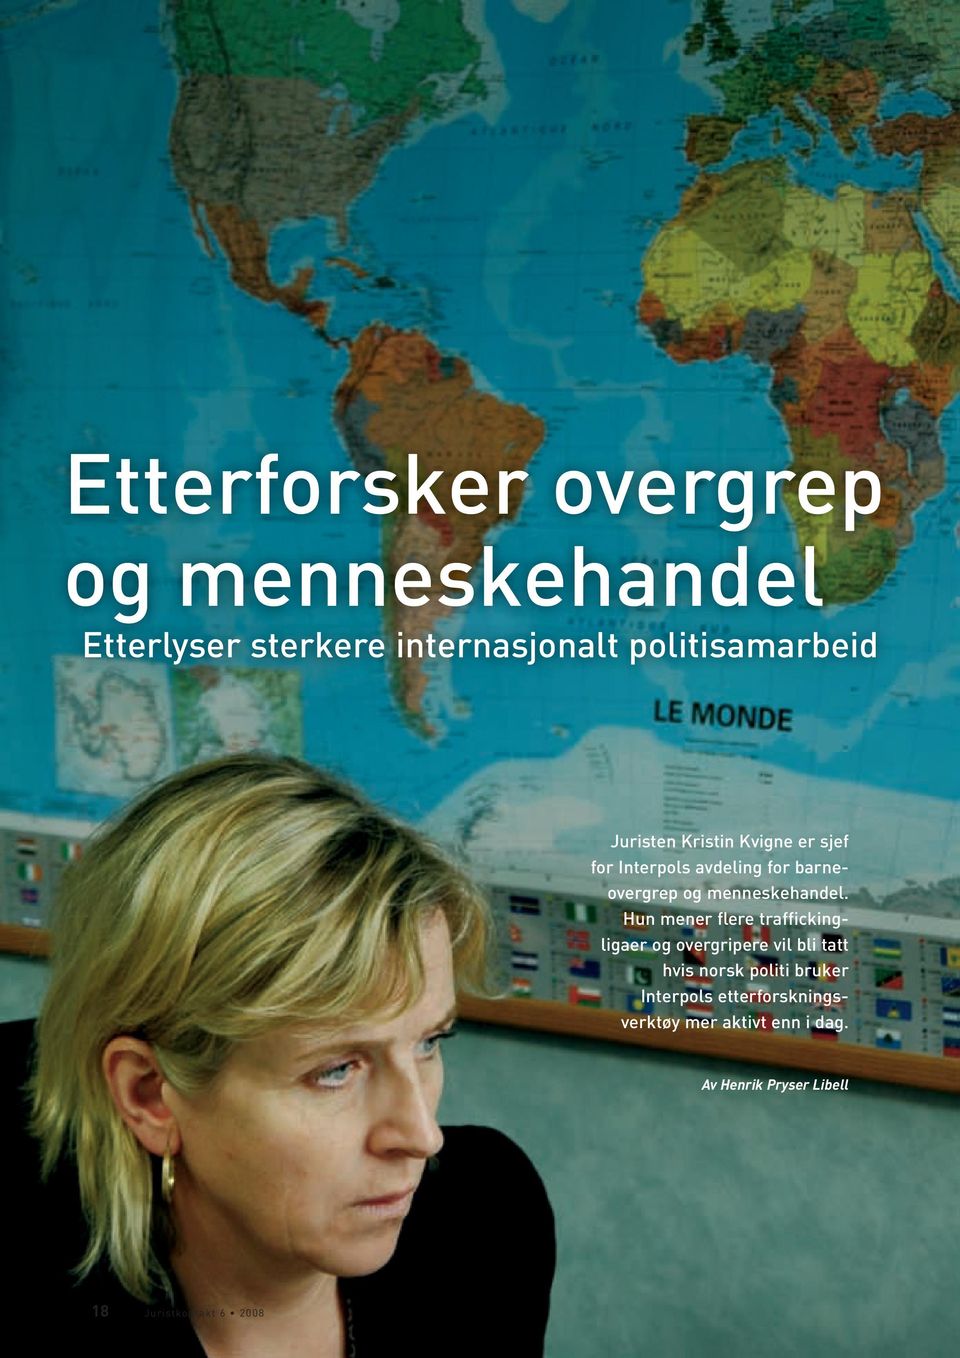 Hun mener flere traffickingligaer og overgripere vil bli tatt hvis norsk politi bruker